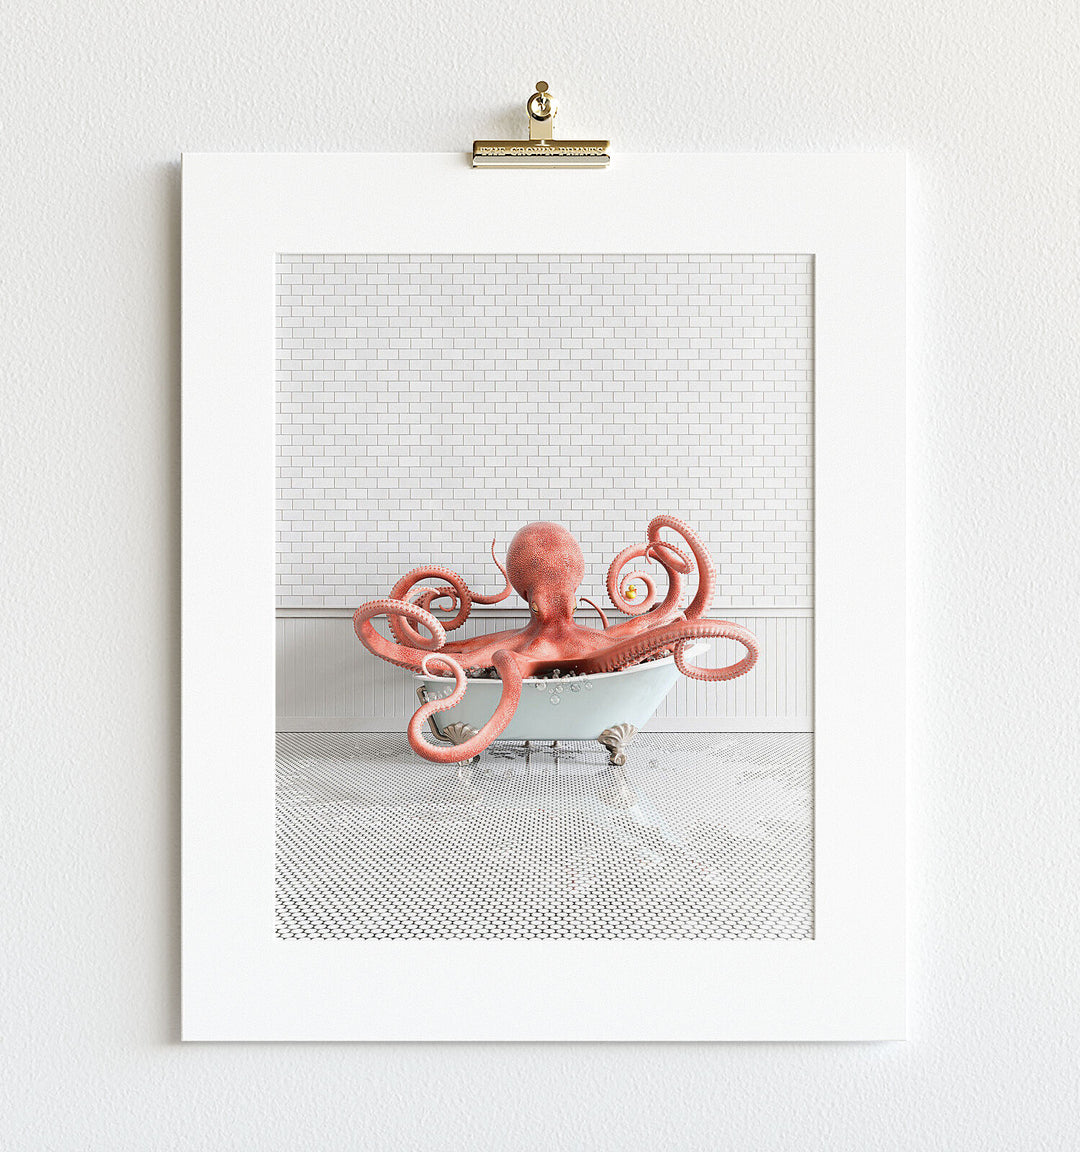 Octopus in Blue Bathtub